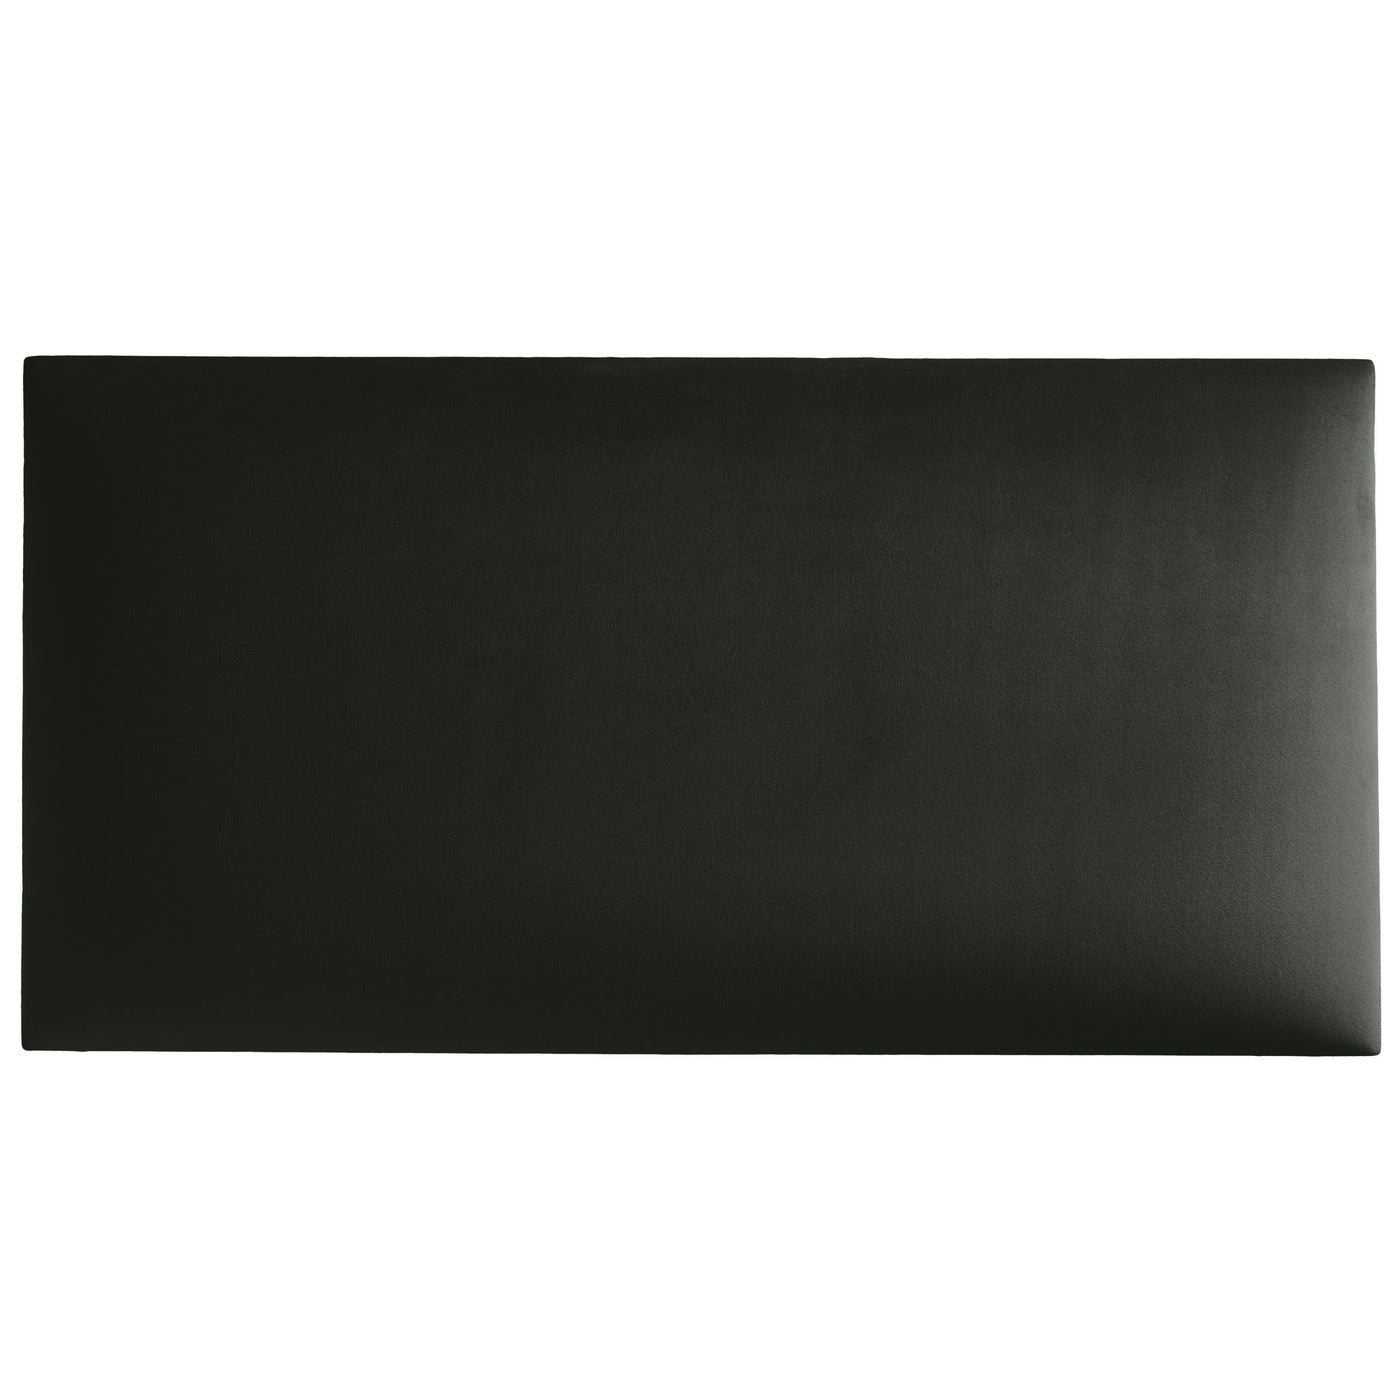 Wandkissen aus Samt Stoff der Rivera Kollektion in der Größe 60x30 mit der Farbe Dunkel-Grau RV96